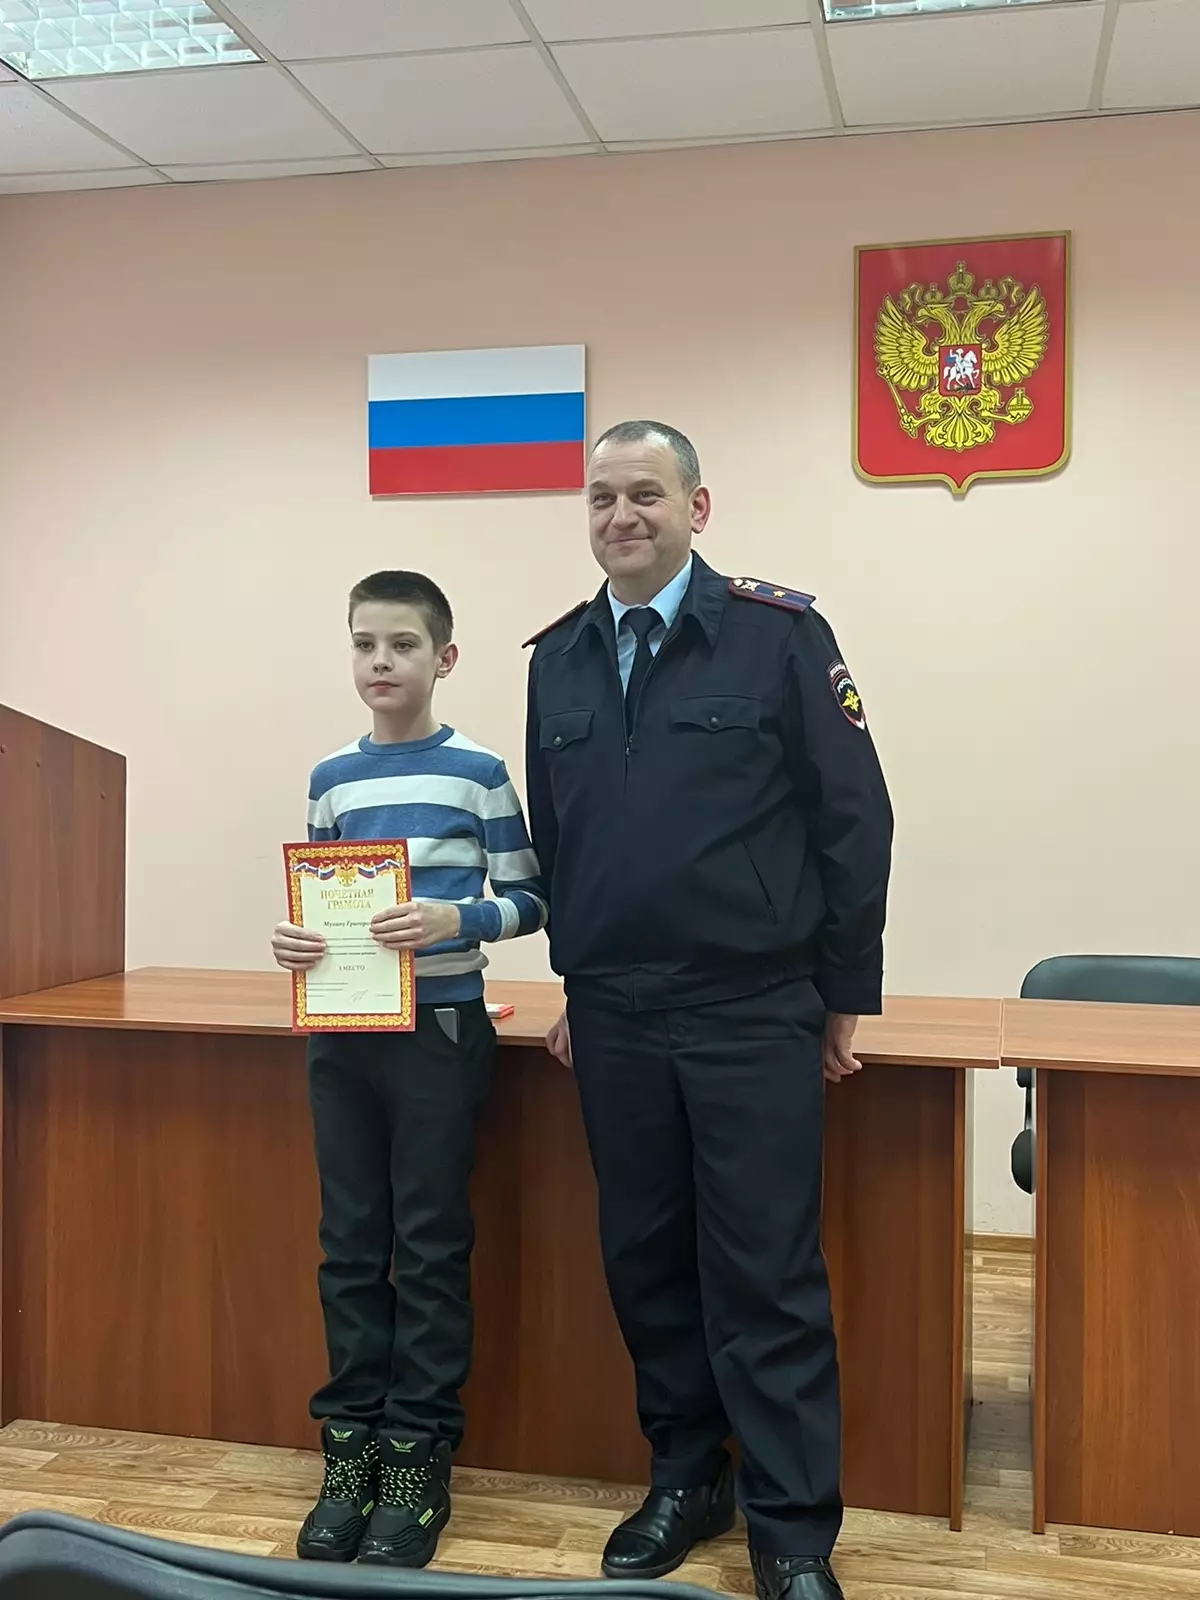 Победителя конкурса Григория Мухина поздравил начальник отделения полиции Вячеслав Максимов